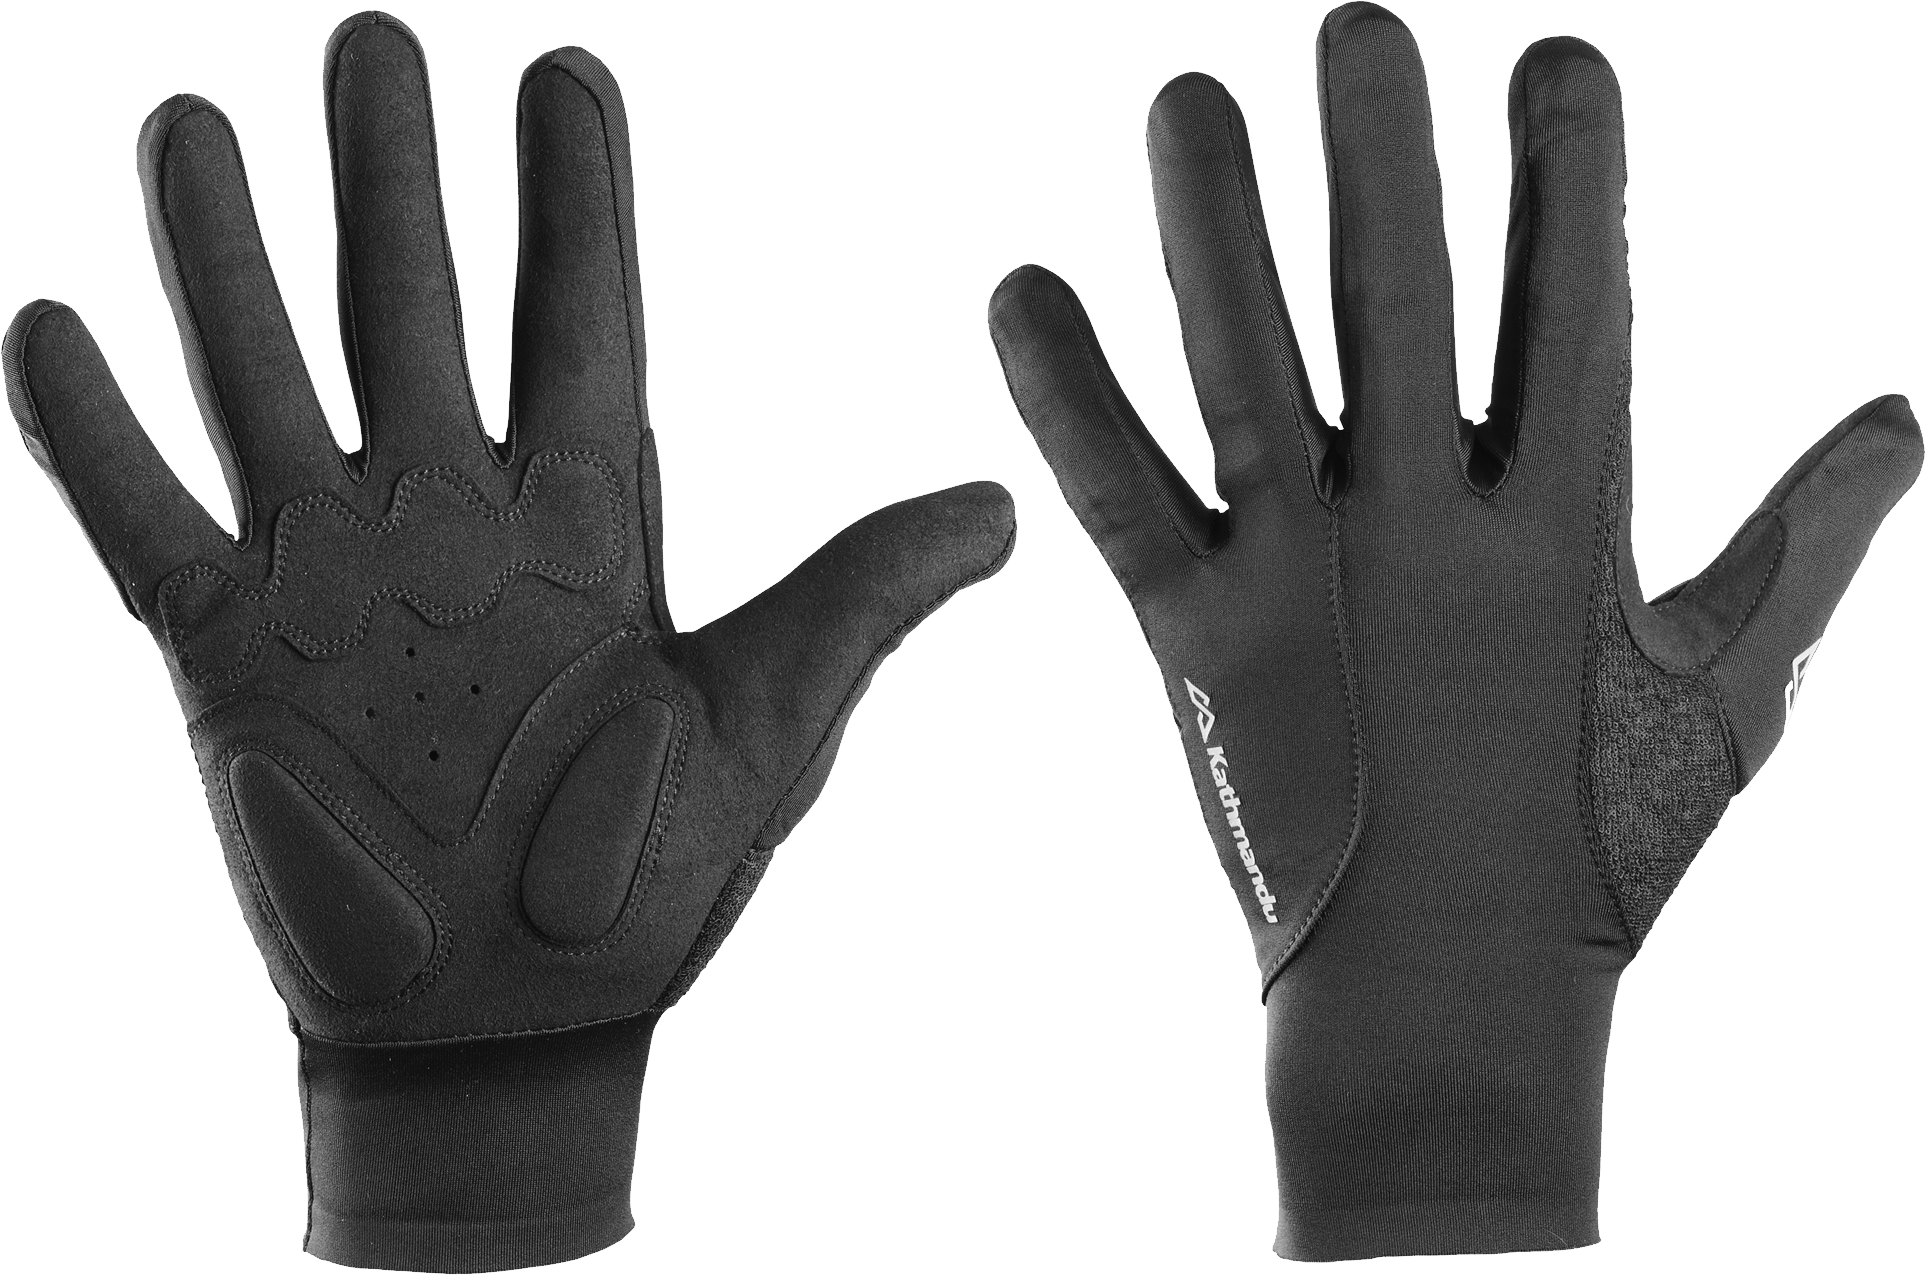 Gloves PNG Image Transparent Background